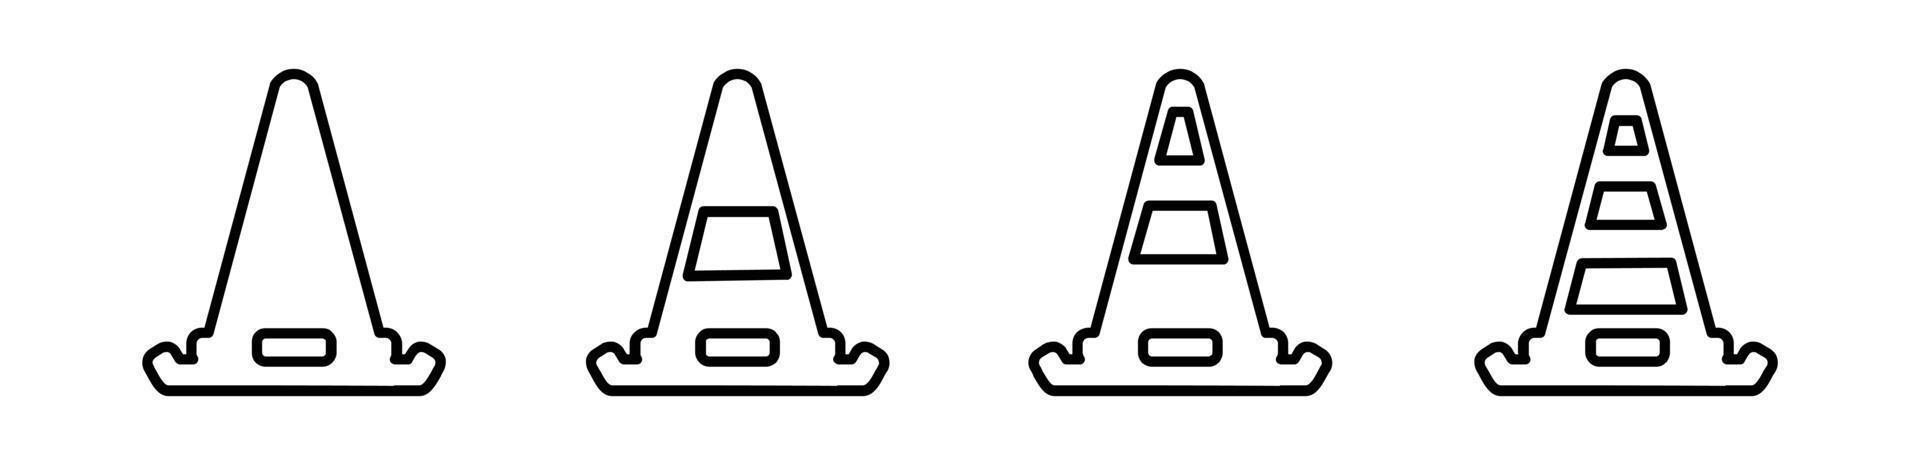 ícone de cone em vetor de estilo diferente, dois ícones de vetor de cone colorido e preto projetados, conjunto de ícones de cone de tráfego, ilustração em vetor de símbolo de barreira